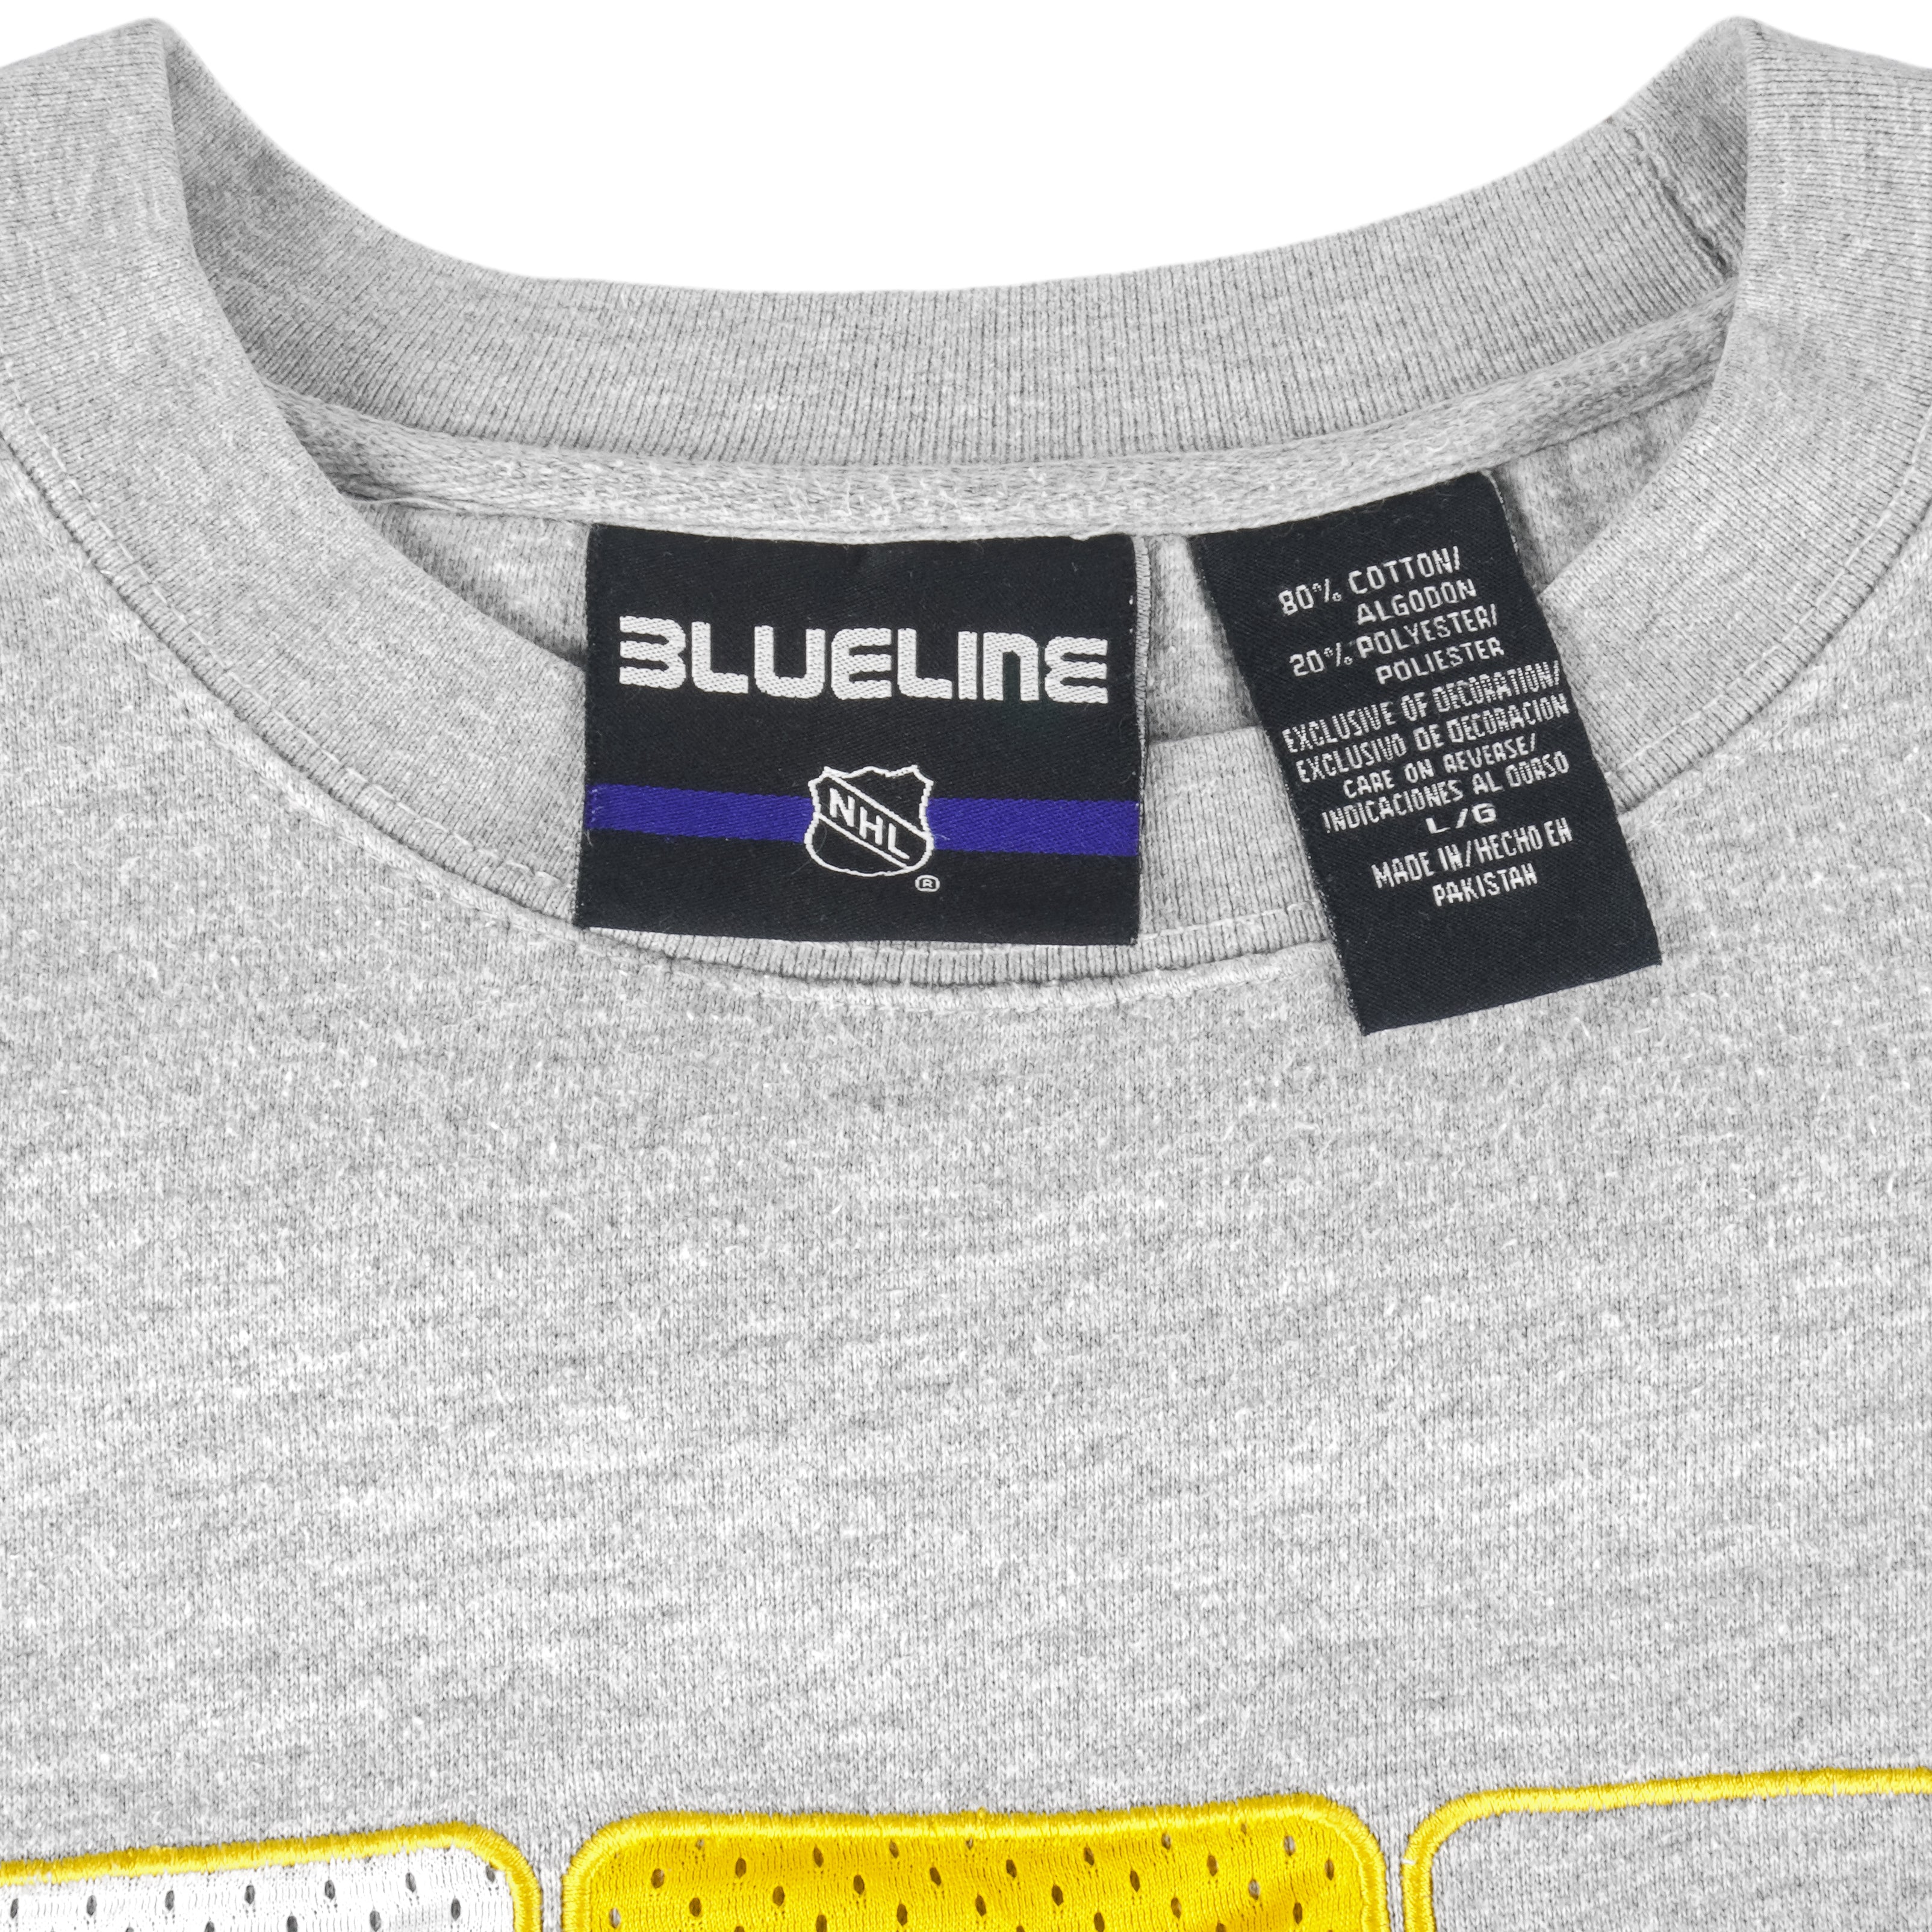 The Peanuts St. Louis Blues Hockey Logo V-Neck T-Shirt